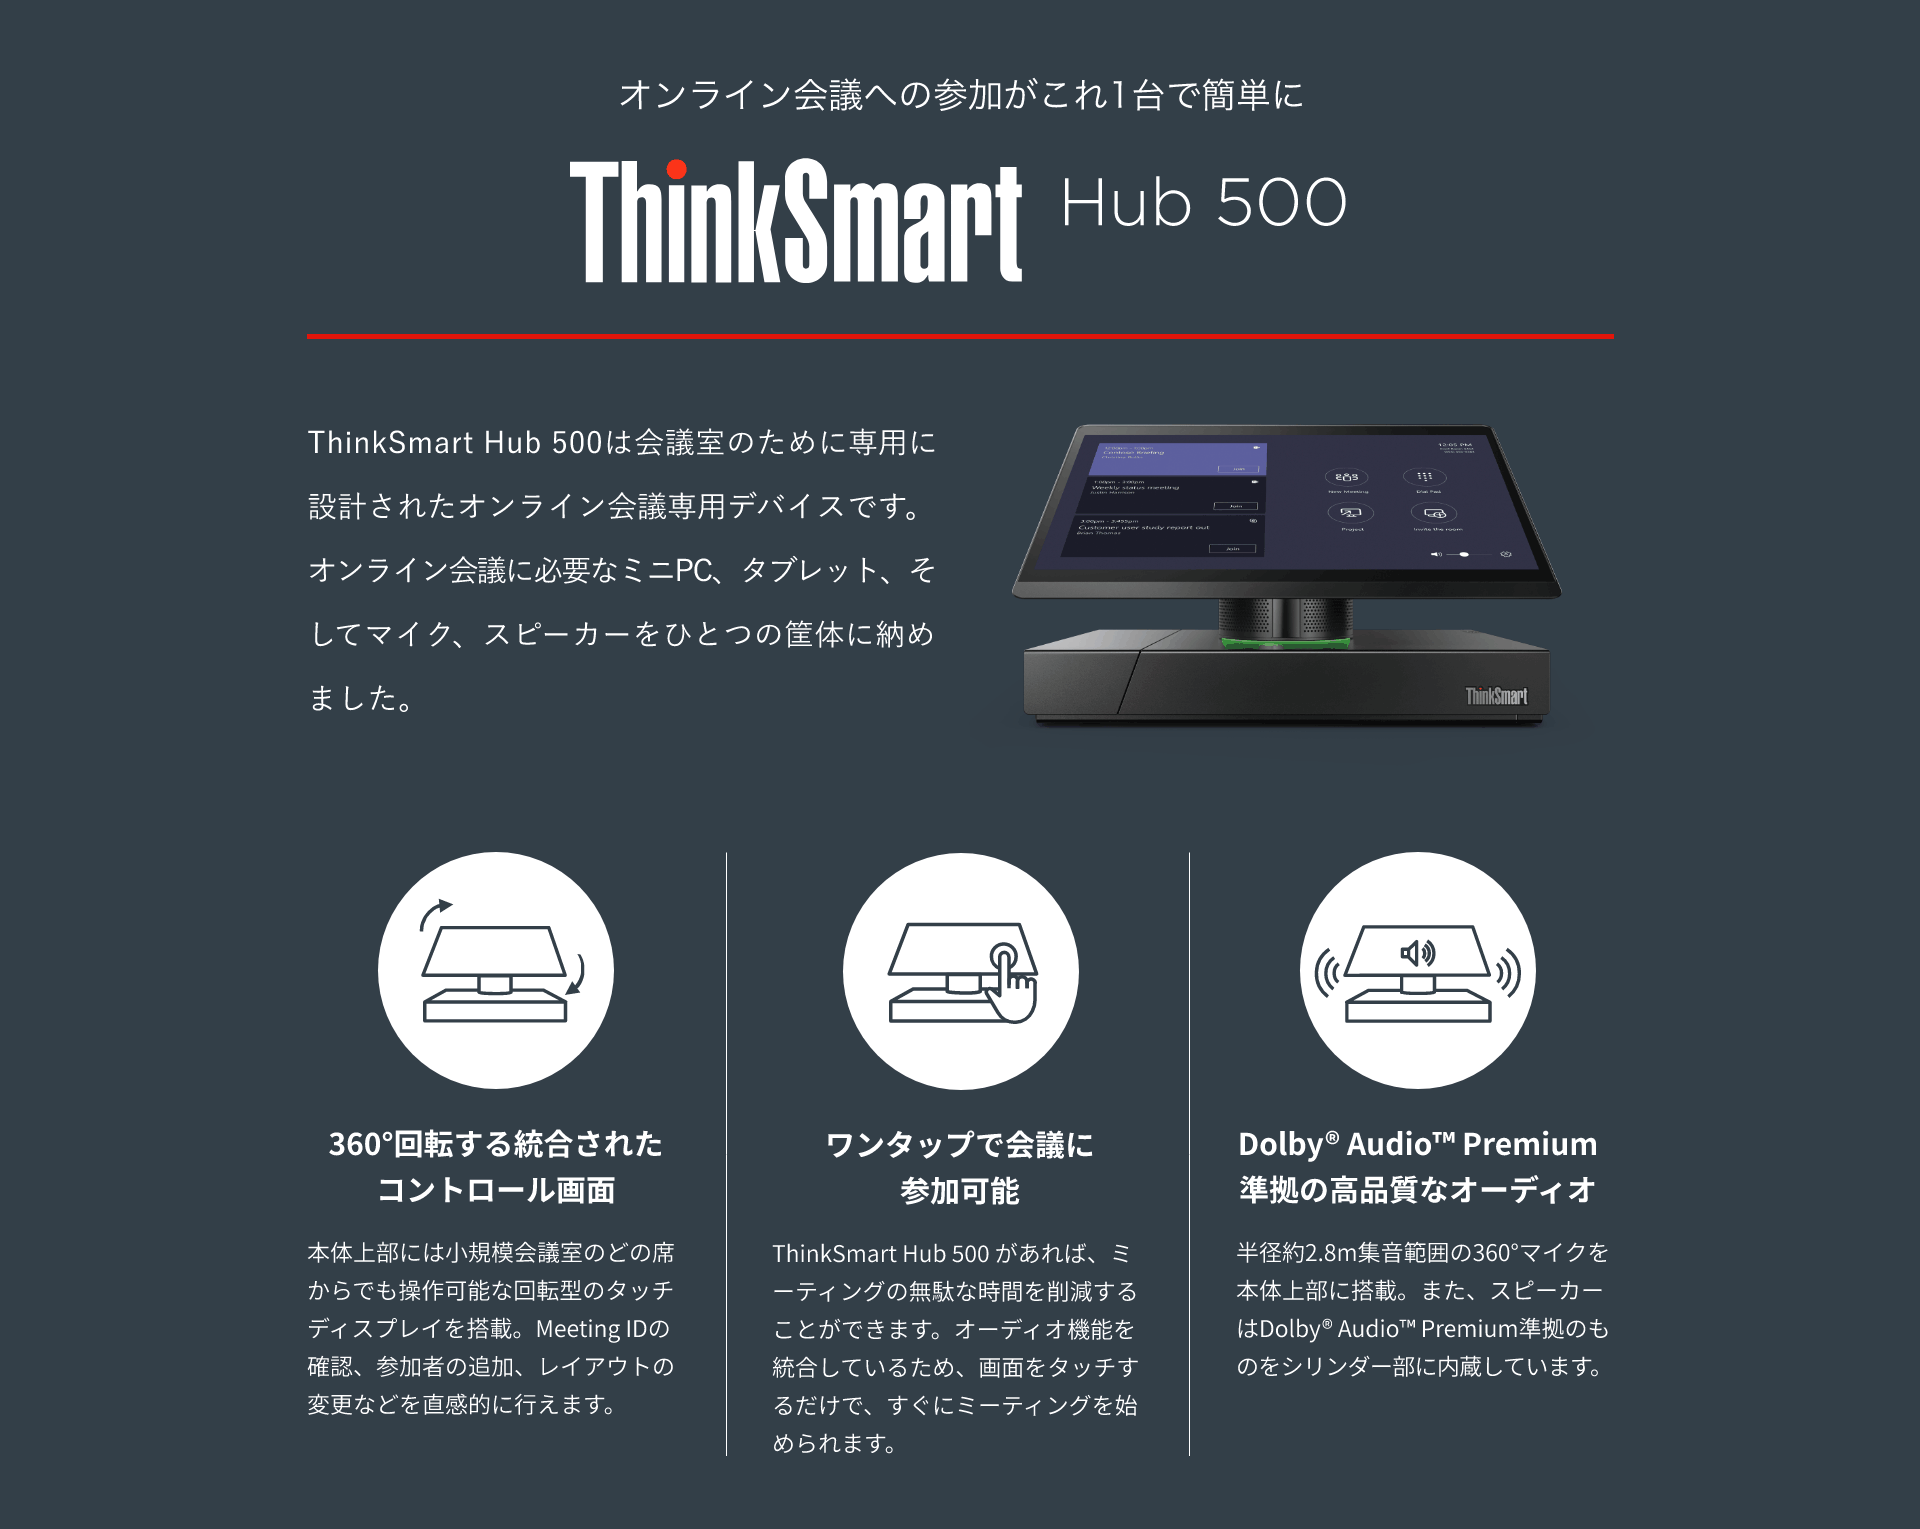 オンライン会議への参加がこれ1台で簡単に ThinkSmart Hub 500 ThinkSmart Hub 500は会議室のために専用に設計されたオンライン会議専用デバイスです。 オンライン会議に必要なミニPC、タブレット、そしてマイク、スピーカーをひとつの筐体に納めました。 360°回転する統合されたコントロール画面 本体上部には小規模会議室のどの席からでも操作可能な回転型のタッチディスプレイを搭載。Meeting IDの確認、参加者の追加、レイアウトの変更などを直感的に行えます。 ワンタップで会議に参加可能 ThinkSmart Hub 500 があれば、ミーティングの無駄な時間を削減することができます。オーディオ機能を統合しているため、画面をタッチするだけで、すぐにミーティングを始められます。 Dolby® Audio™ Premium 準拠の高品質なオーディオ 半径約2.8m集音範囲の360°マイクを本体上部に搭載。また、スピーカーはDolby® Audio™ Premium準拠のものをシリンダー部に内蔵しています。